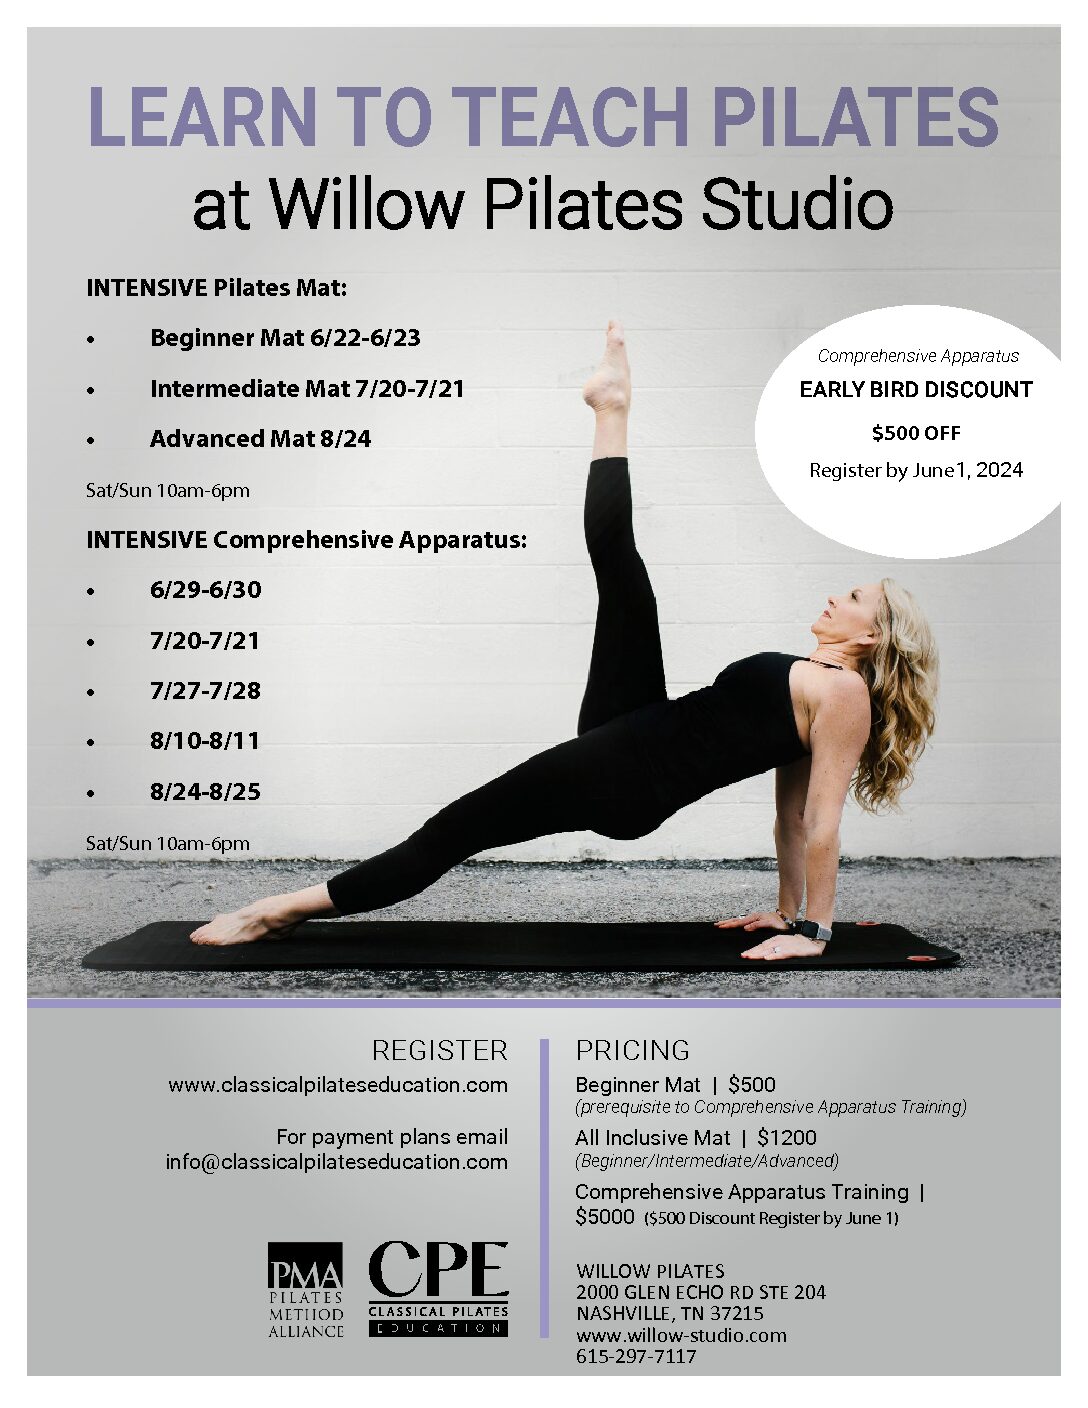 Willow Pilates in Nashville, TN​